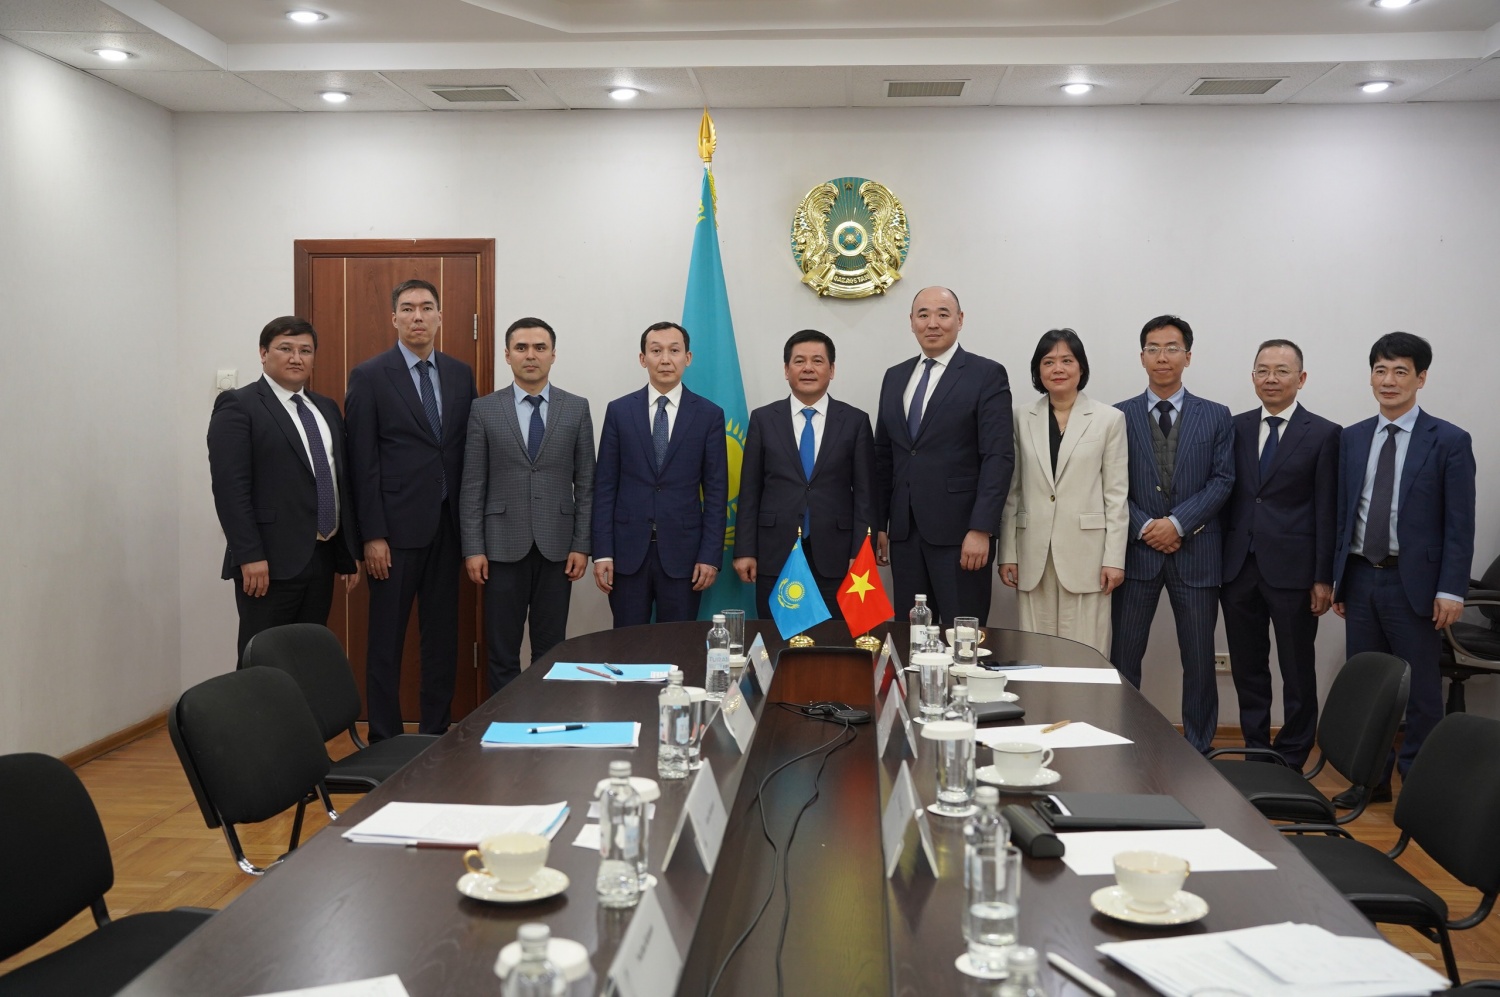 Bộ trưởng Bộ Công Thương làm việc với Bộ trưởng Bộ Công nghiệp và Xây dựng Kazakhstan